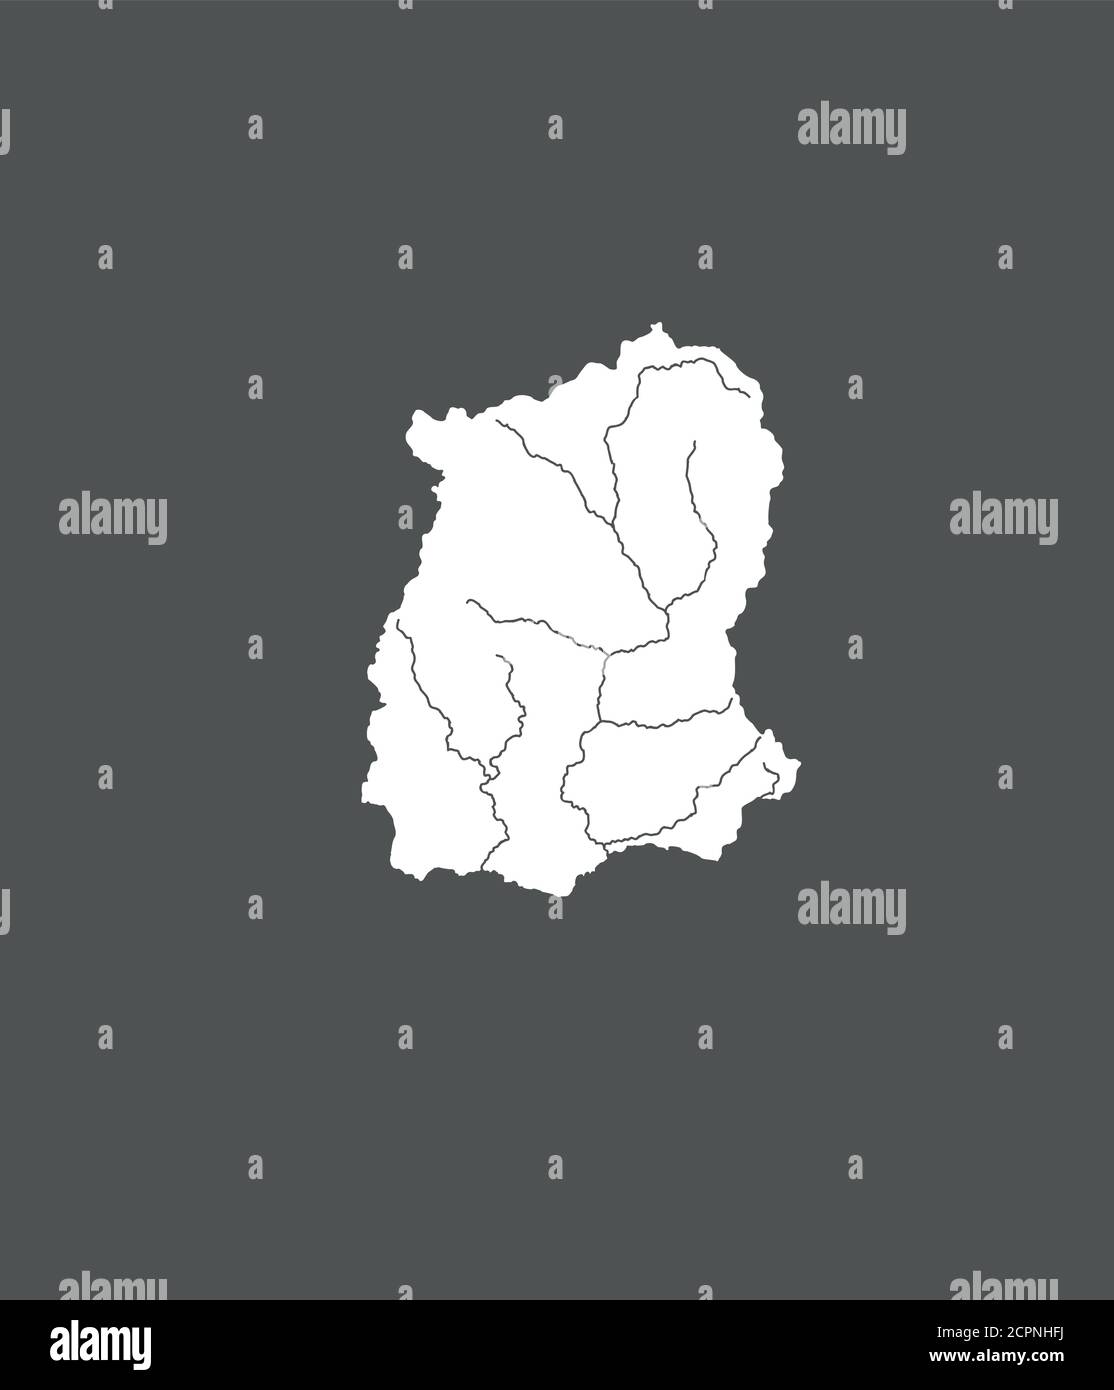 Stati dell'India - mappa di Sikkim. Fatto a mano. Fiumi e laghi sono mostrati. Guardate le mie altre immagini di serie cartografiche - sono tutte molto detaile Illustrazione Vettoriale